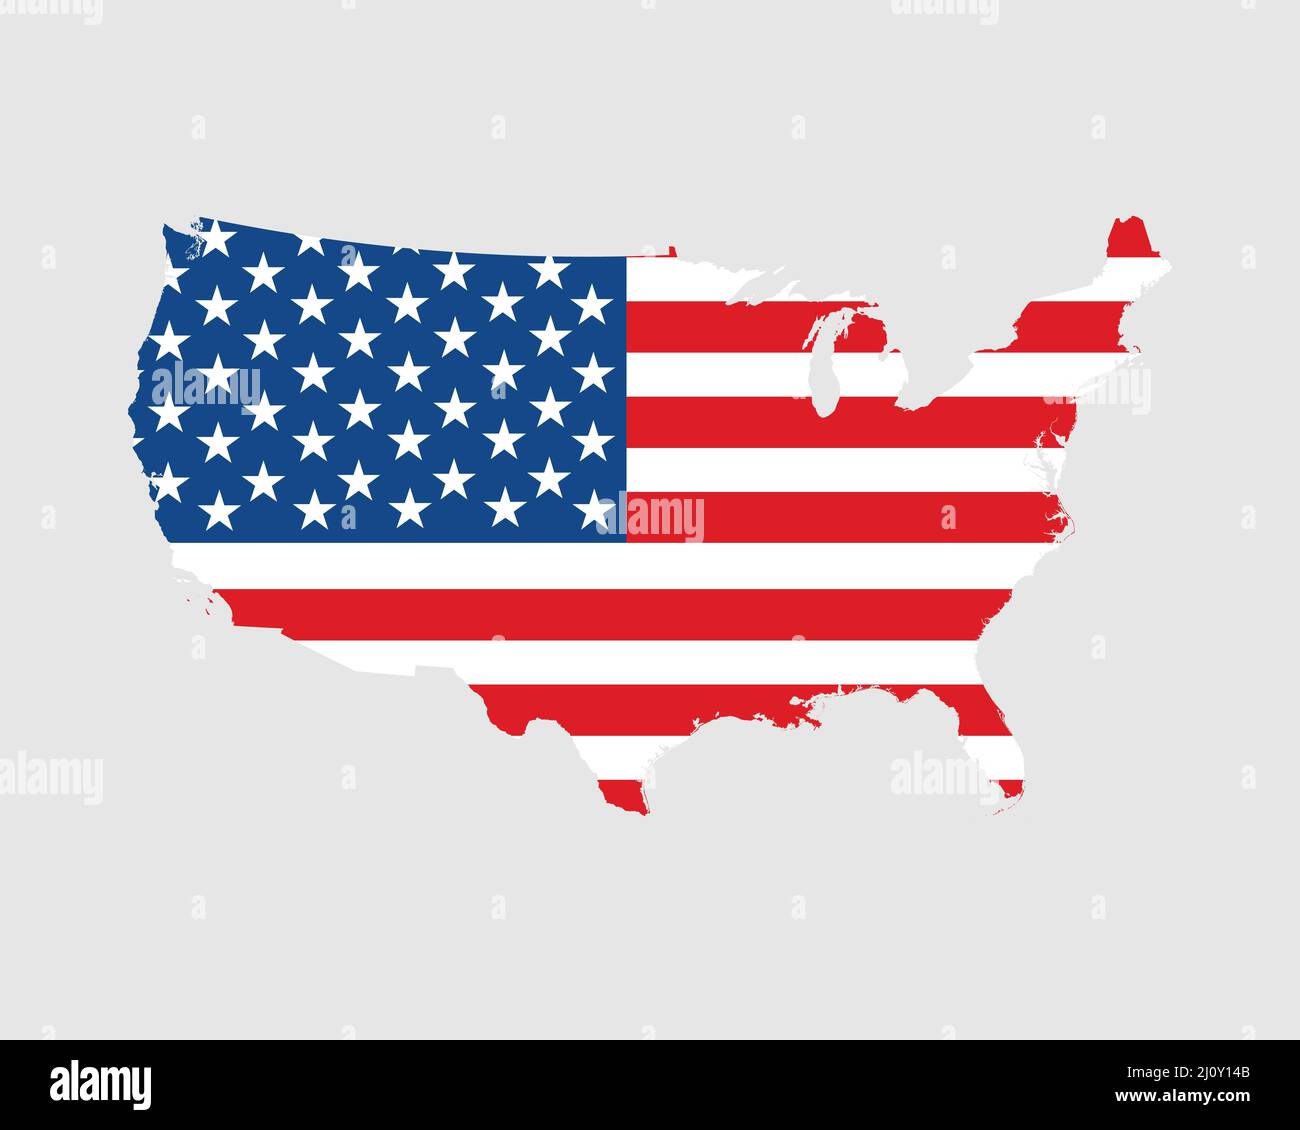 Etats-Unis d'Amérique carte des drapeaux des Etats-Unis. Carte des Etats-Unis avec la bannière du pays américain. Illustration vectorielle. Illustration de Vecteur